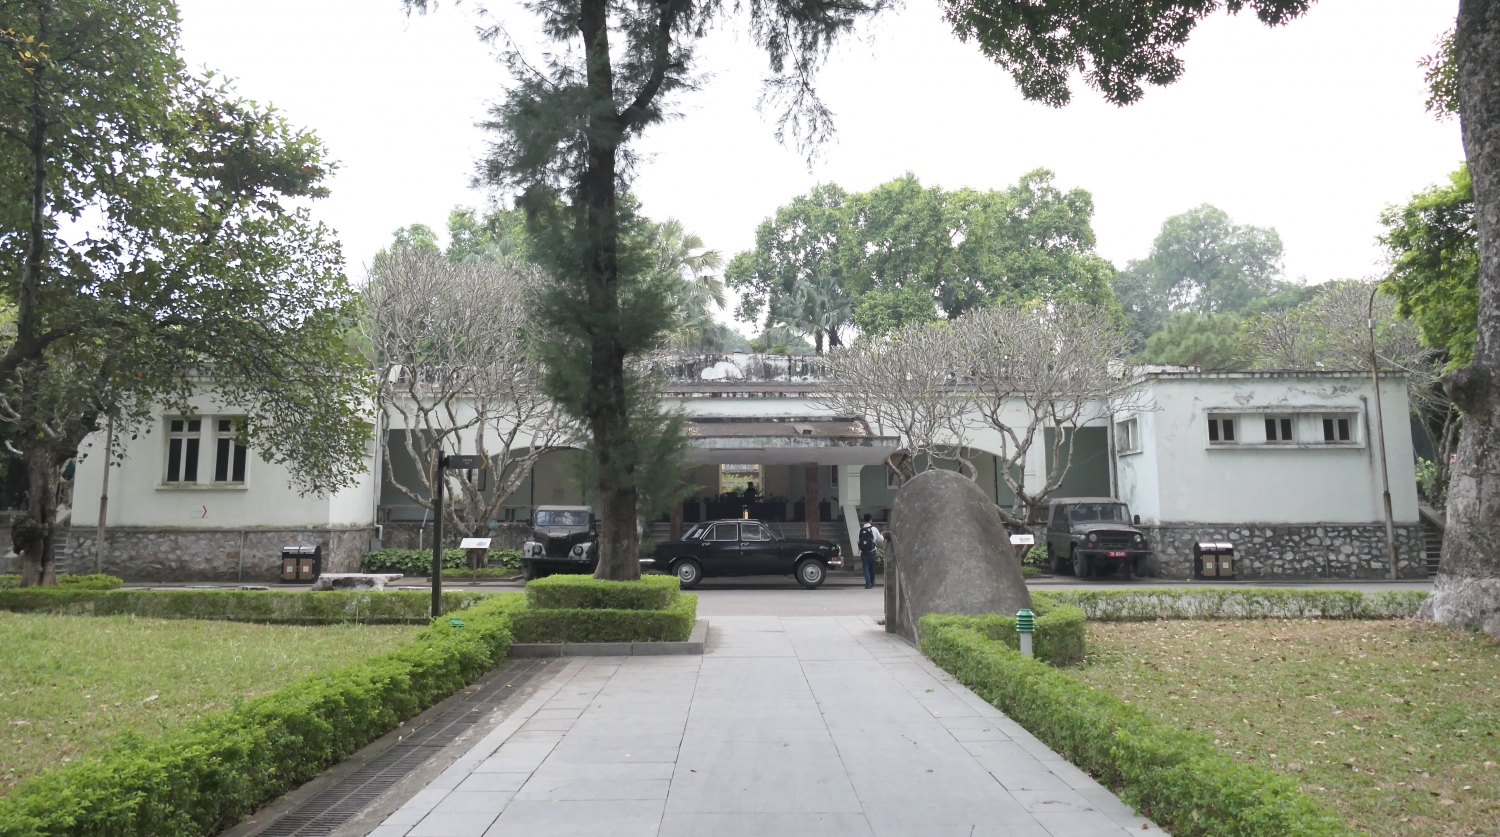 Nhà D67 được xây dựng năm 1967, ở phía Bắc nền Điện Kính Thiên. Toà nhà có kiến trúc hiện đại, tường bê tông dày 60cm. Từ năm 1967 đến tháng 4 năm 2004, Bộ Chính trị Đảng Cộng sản Việt Nam, Quân uỷ Trung ương đã tổ chức nhiều cuộc họp quan trọng, đề ra các quyết sách chiến lược chỉ đạo cuộc kháng chiến chống Mỹ cứu nước và sự nghiệp bảo vệ Tổ quốc Việt Nam, xã hội chủ nghĩa.